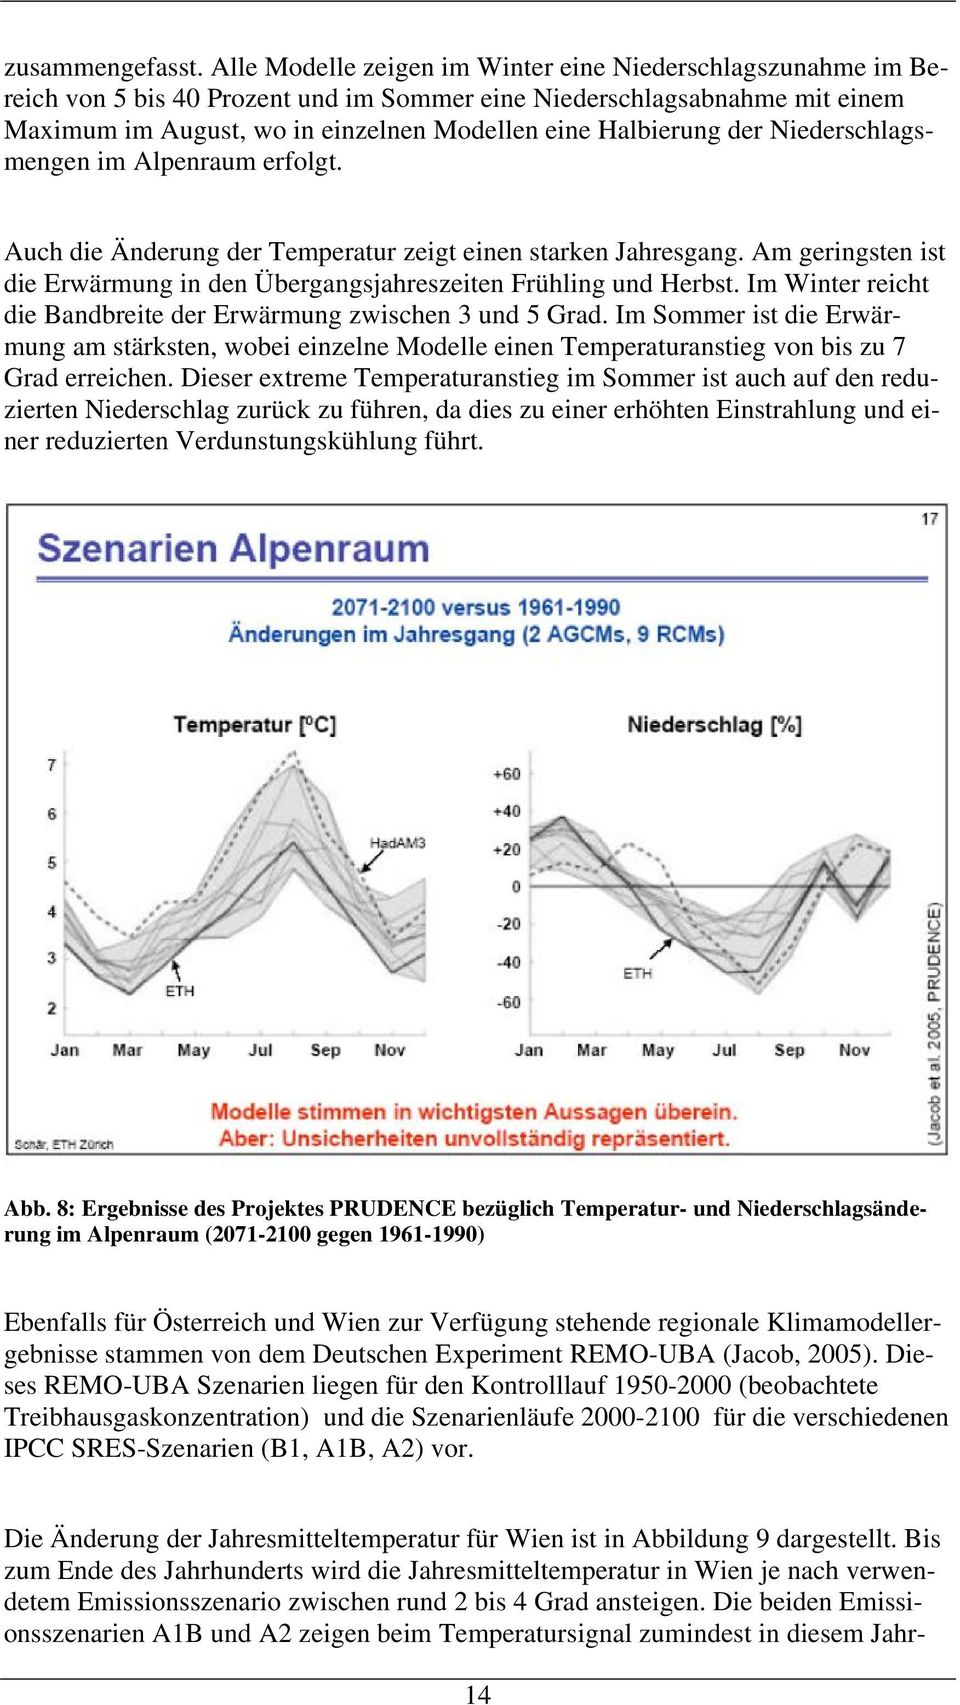 der Niederschlagsmengen im Alpenraum erfolgt. Auch die Änderung der Temperatur zeigt einen starken Jahresgang. Am geringsten ist die Erwärmung in den Übergangsjahreszeiten Frühling und Herbst.